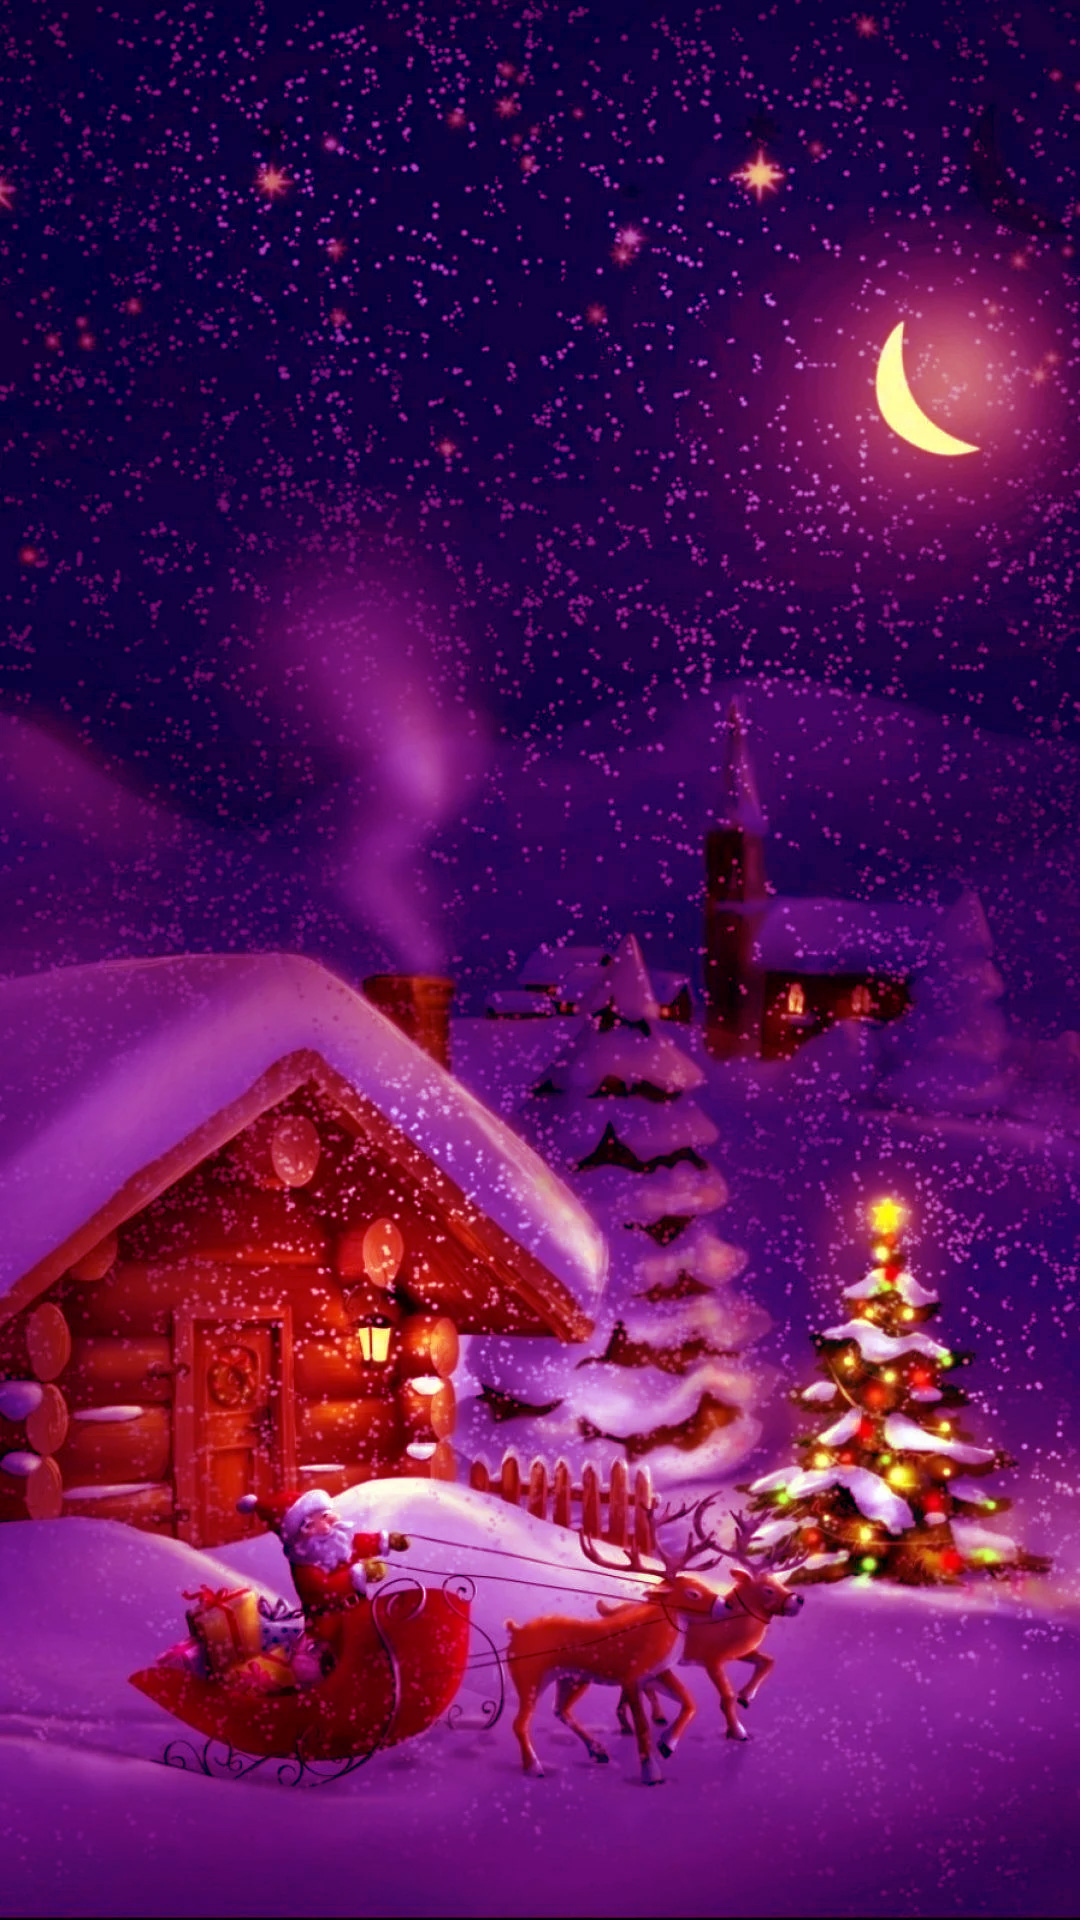 Christmas Time  Christmas desktop Christmas wallpaper free Christmas  images